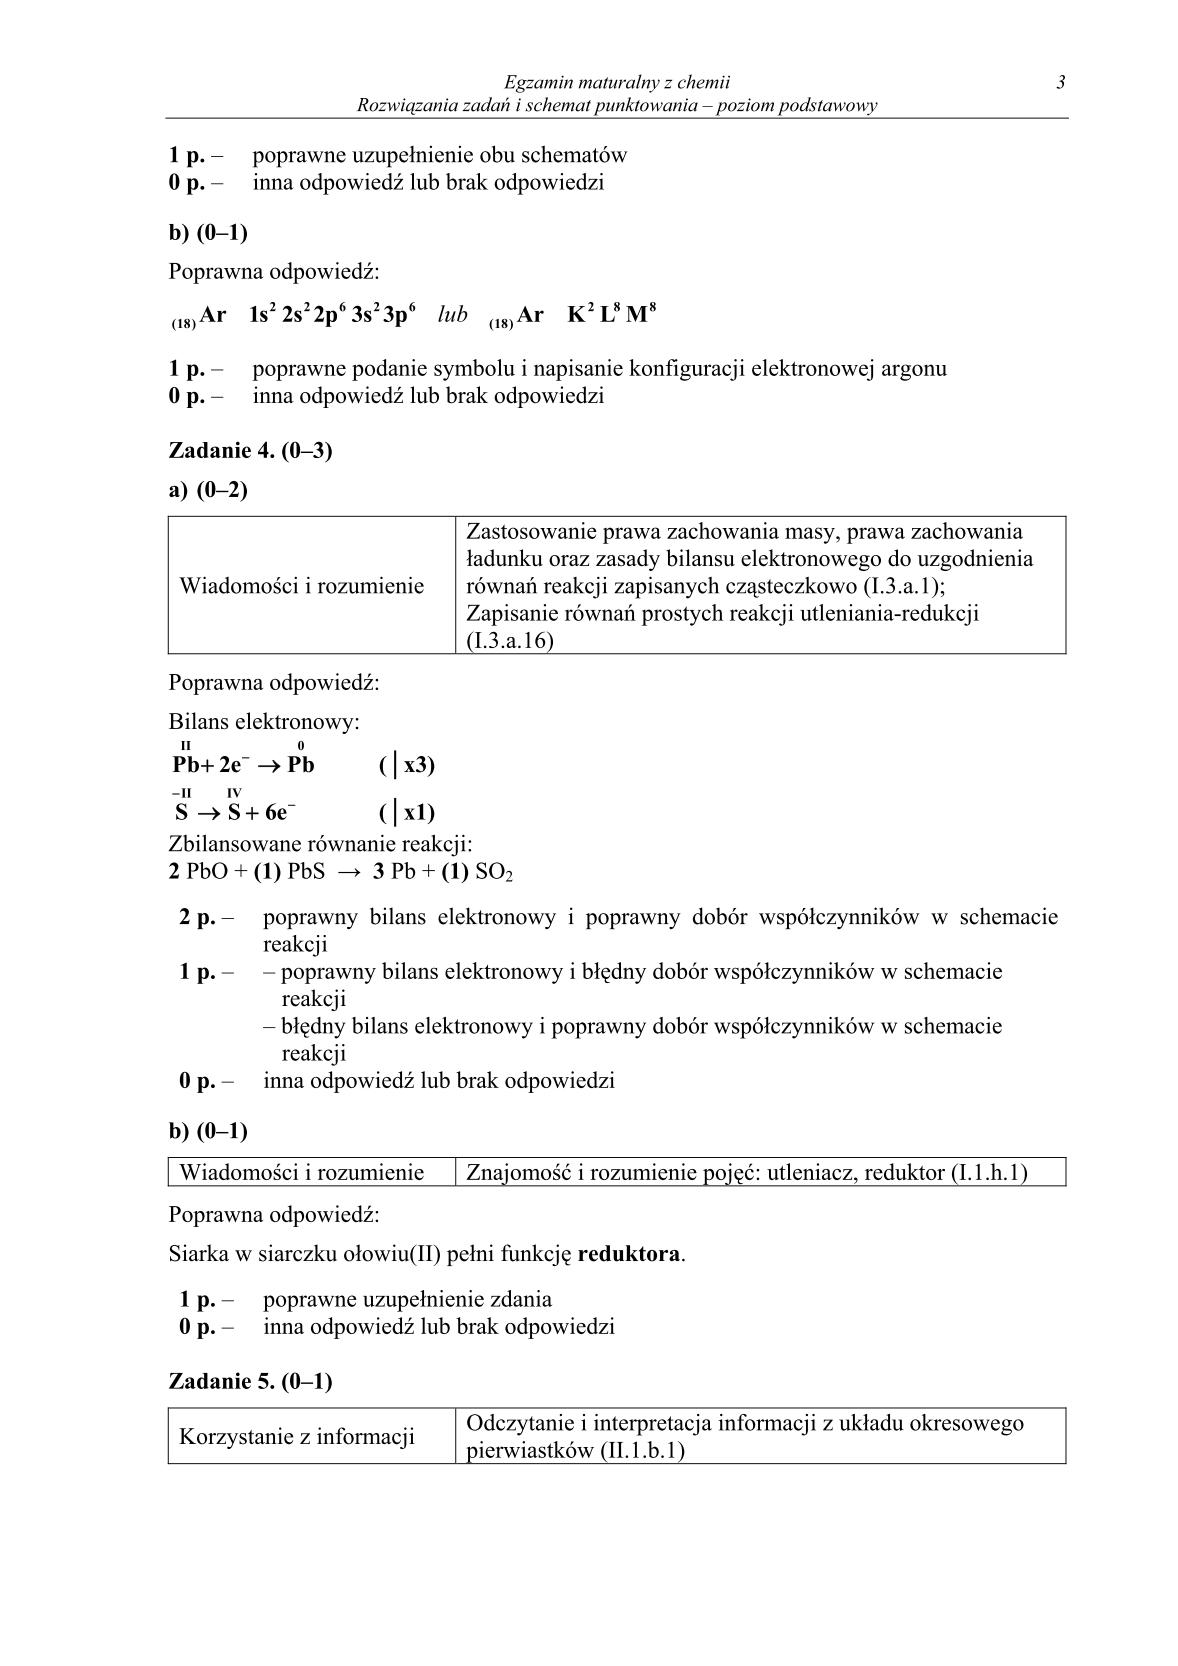 odpowiedzi-chemia-poziom-podstawowy-matura-2014-str.3